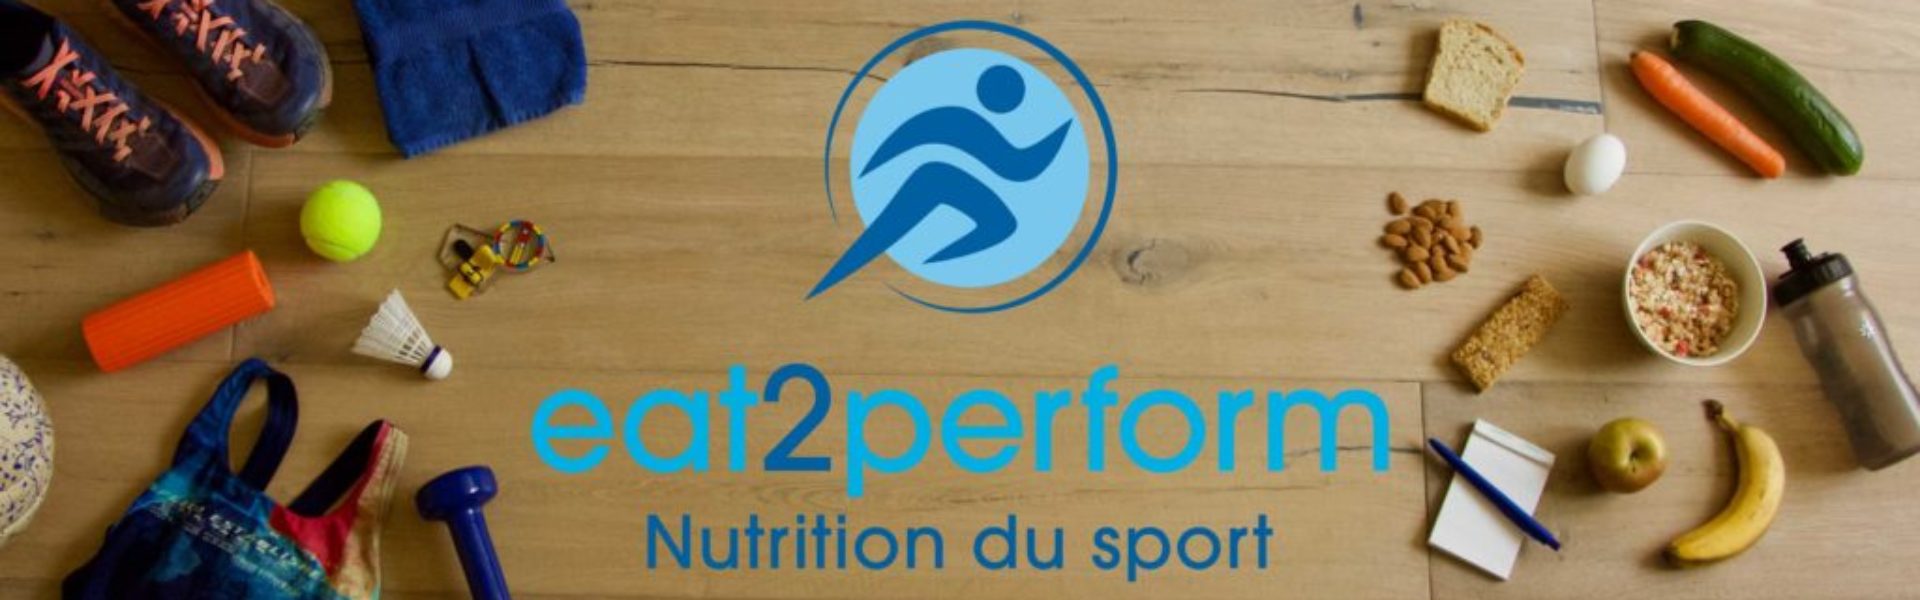 nutrition_du_sport_eat2perform